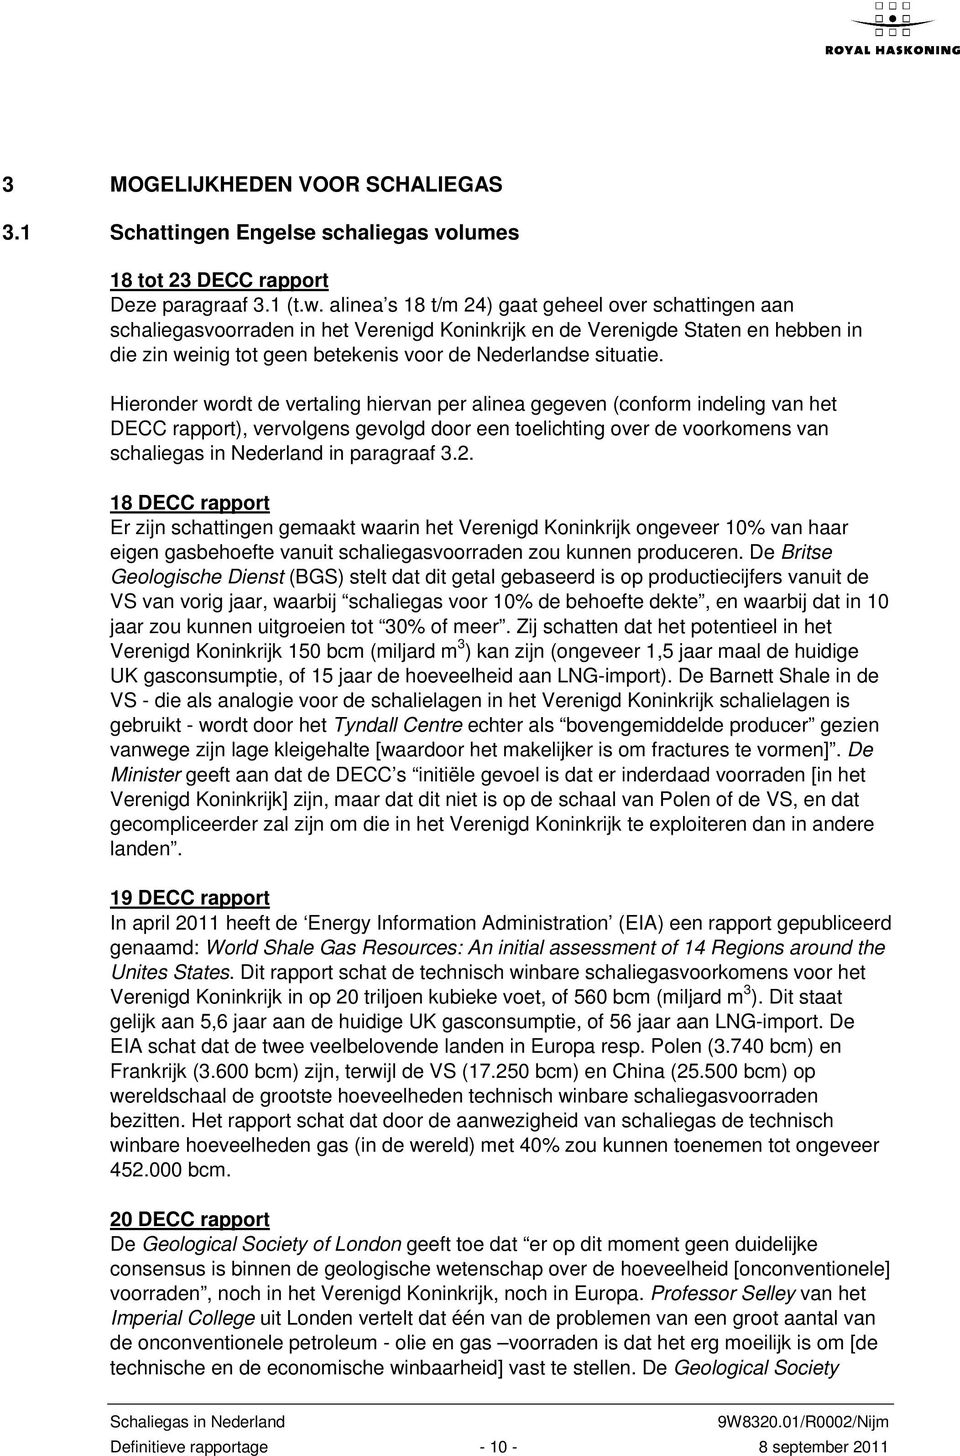 Hieronder wordt de vertaling hiervan per alinea gegeven (conform indeling van het DECC rapport), vervolgens gevolgd door een toelichting over de voorkomens van schaliegas in Nederland in paragraaf 3.